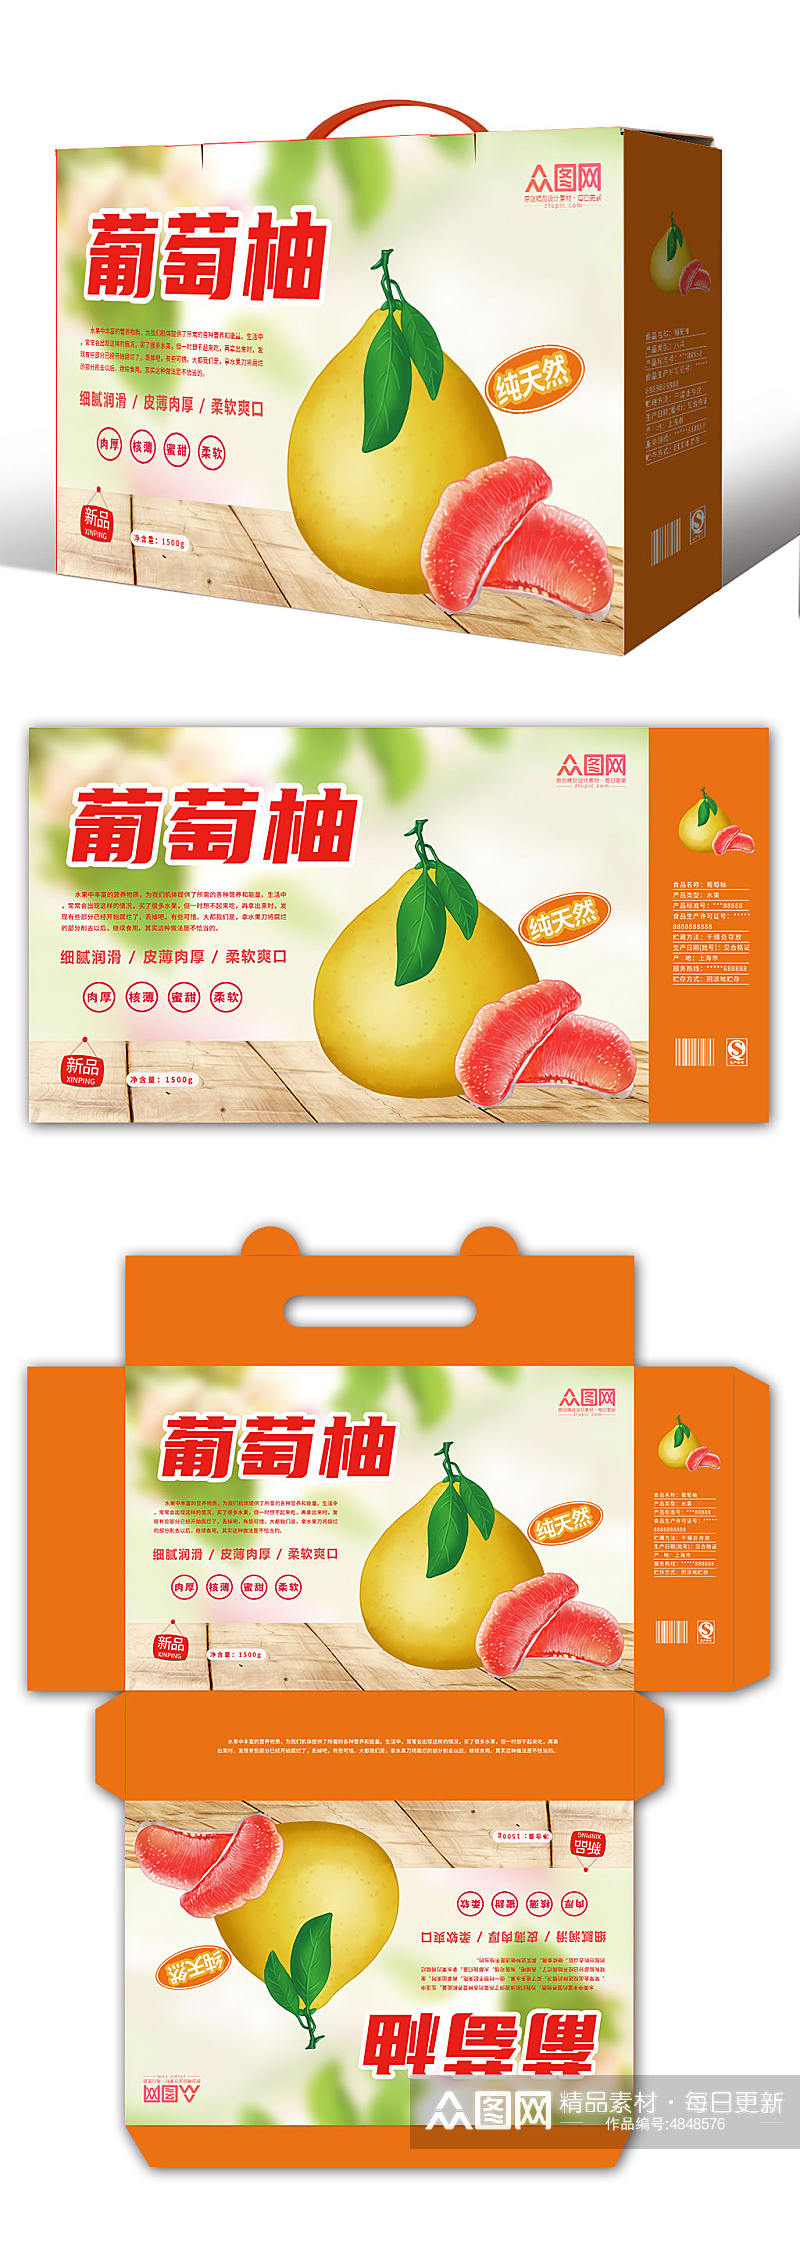 橙色柚子水果鲜果包装礼盒设计素材